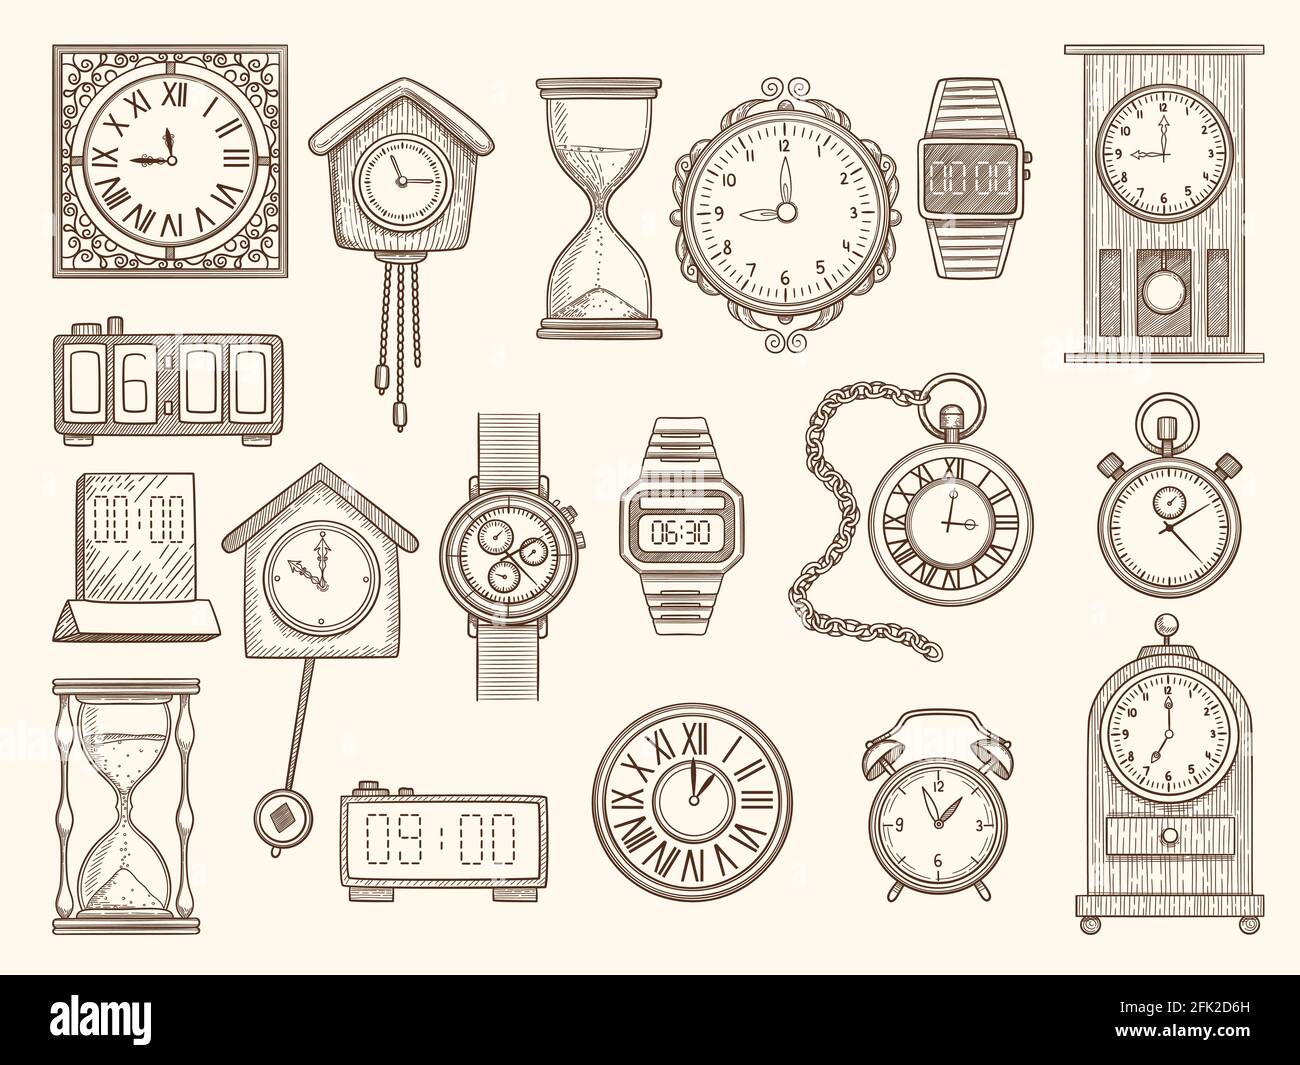 Uhrenset. Zeichnung Uhren Timer Alarme Vektor Bilder Sammlung Stock Vektor